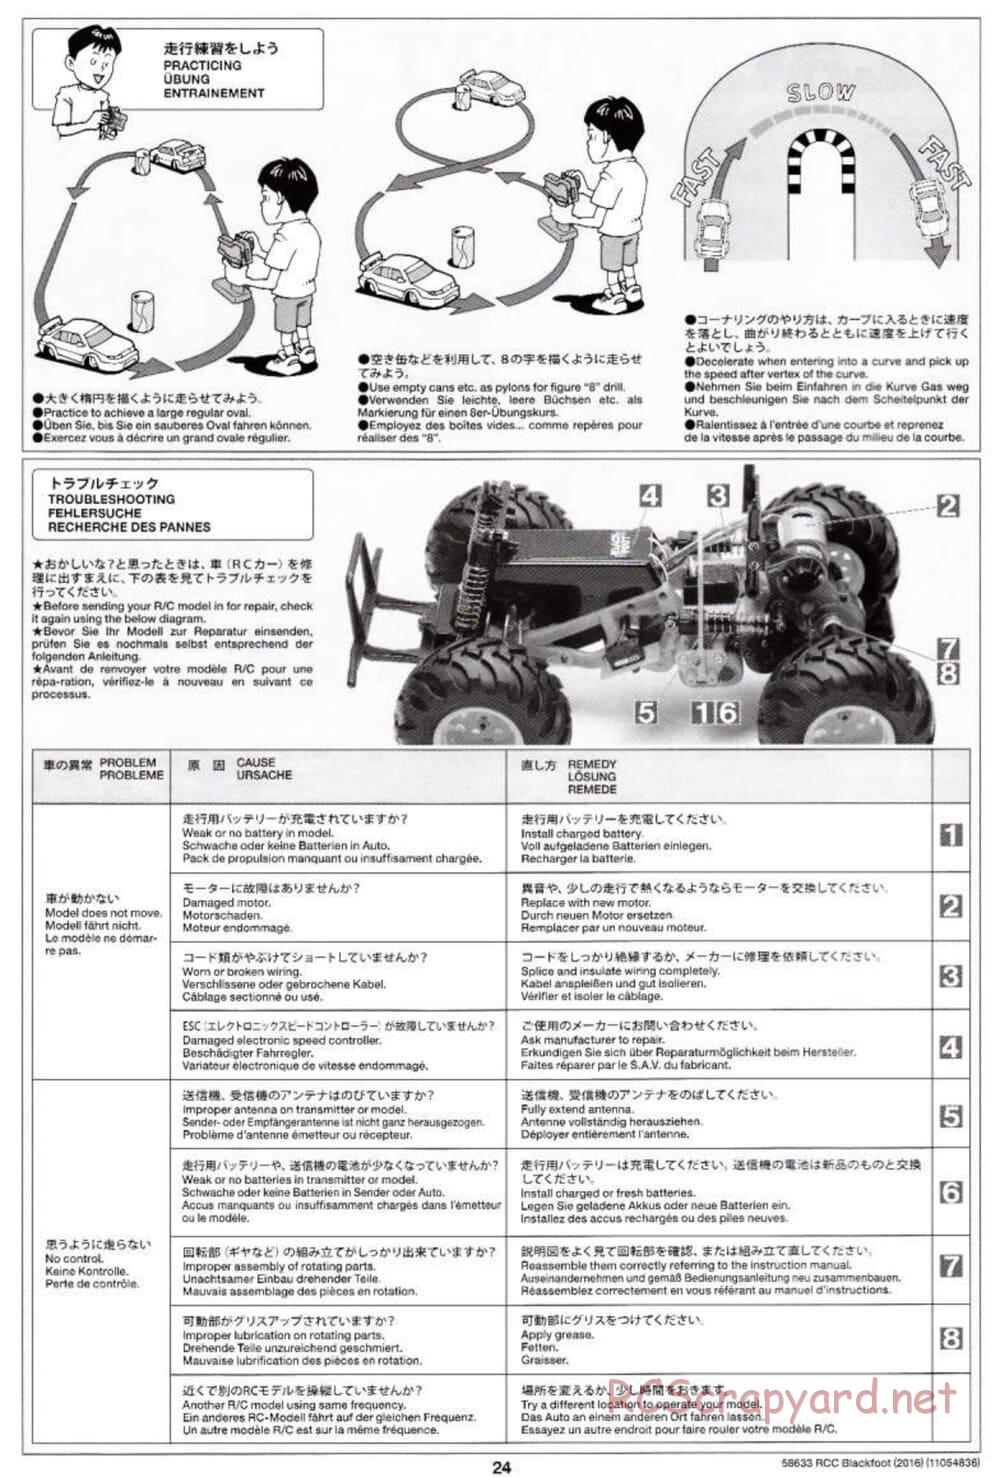 Tamiya - Blackfoot 2016 - ORV Chassis - Manual - Page 24